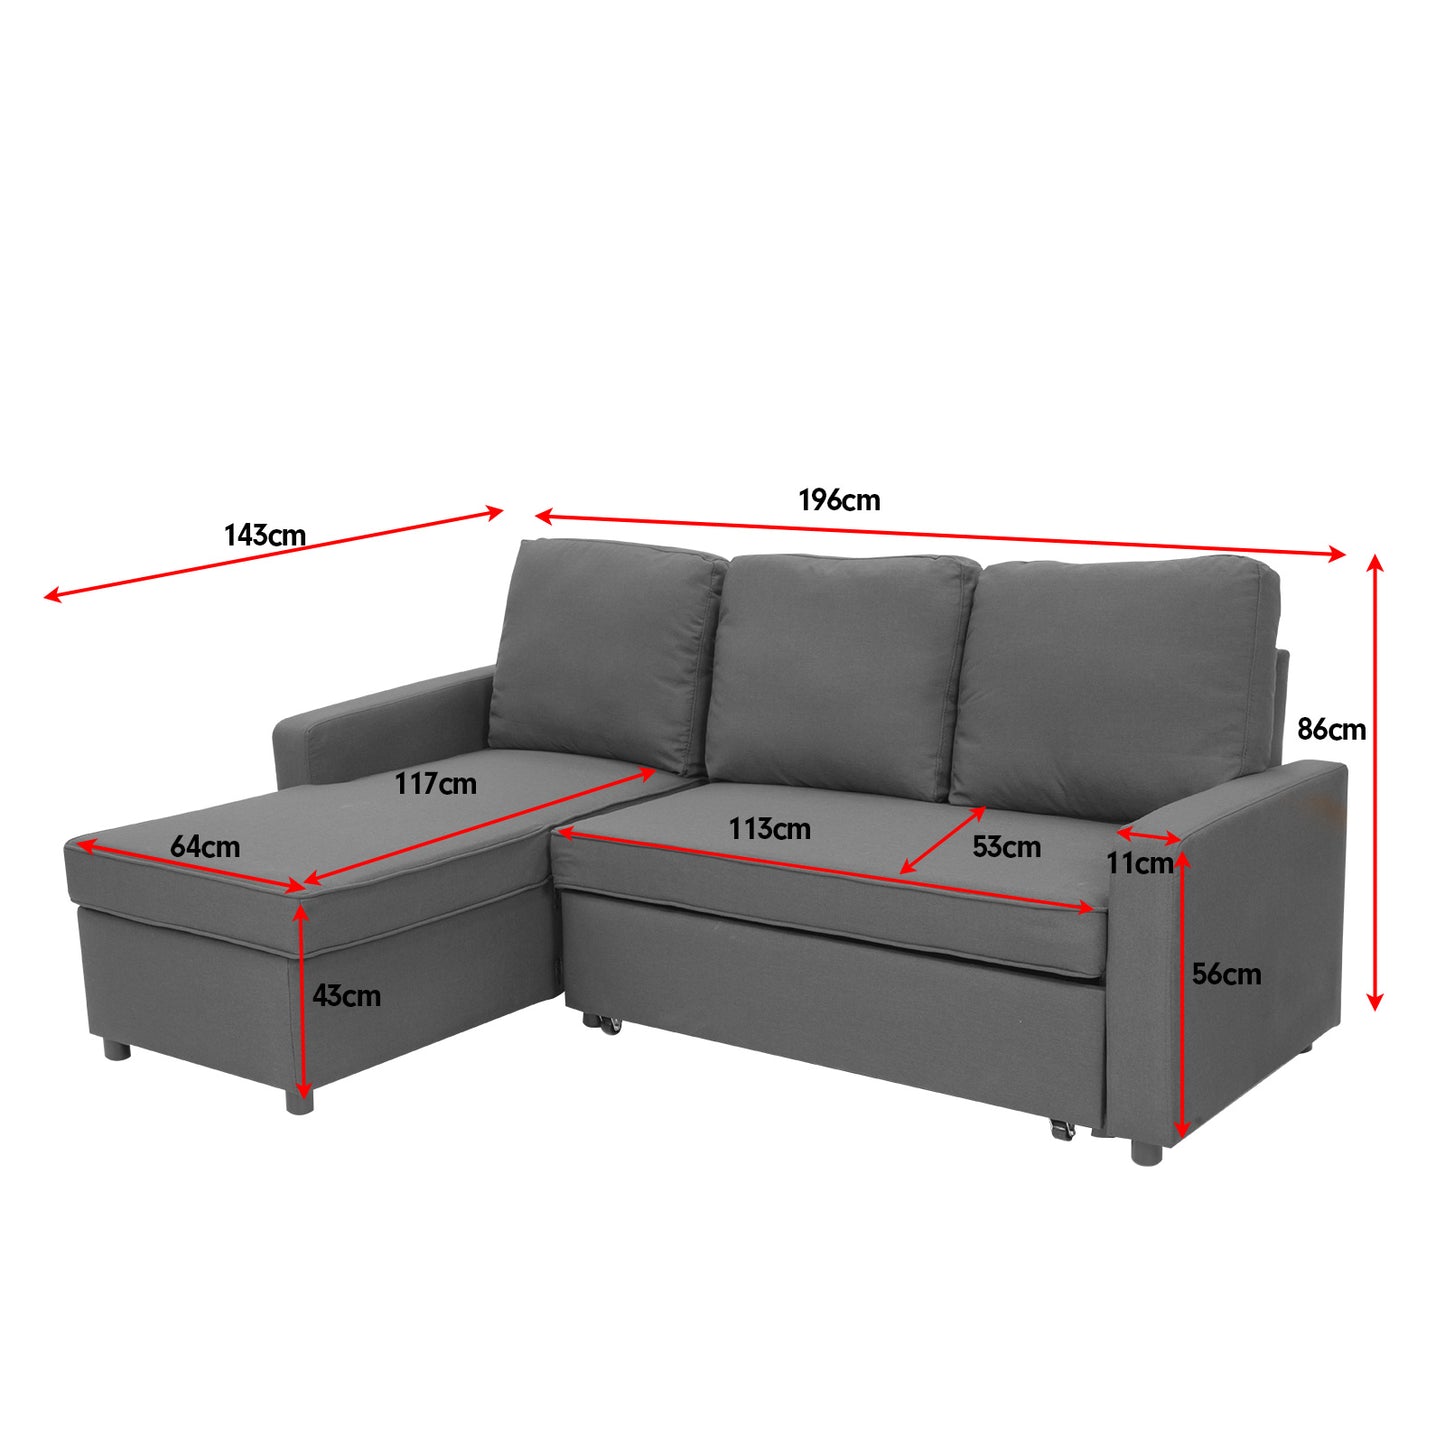 Sarantino 3 Seater Corner Sofa Bed Storage Chaise - Grey